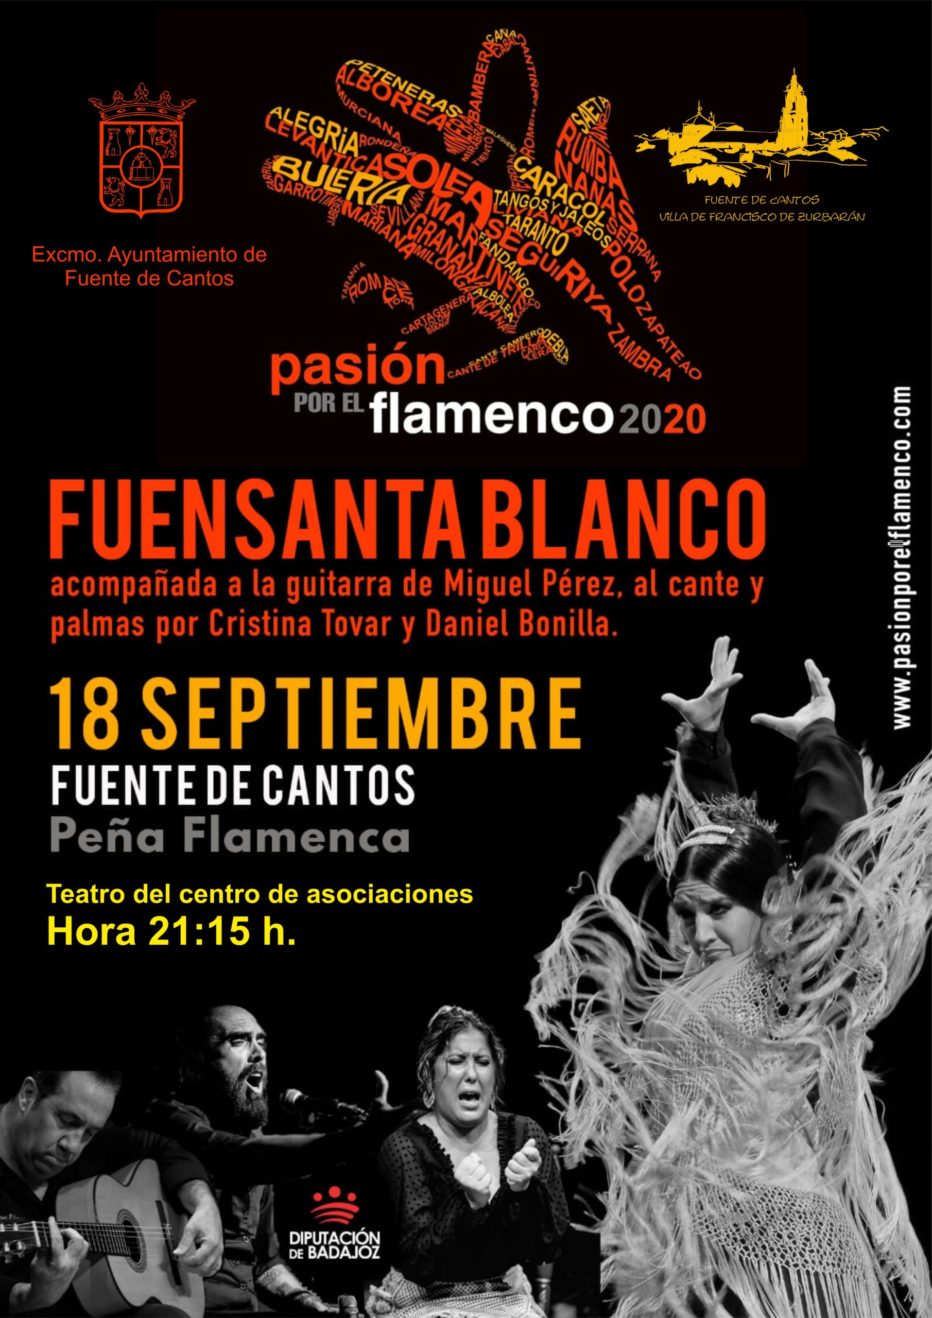 El Otoño Flamenco se traslada al Auditorio del centro de asociaciones